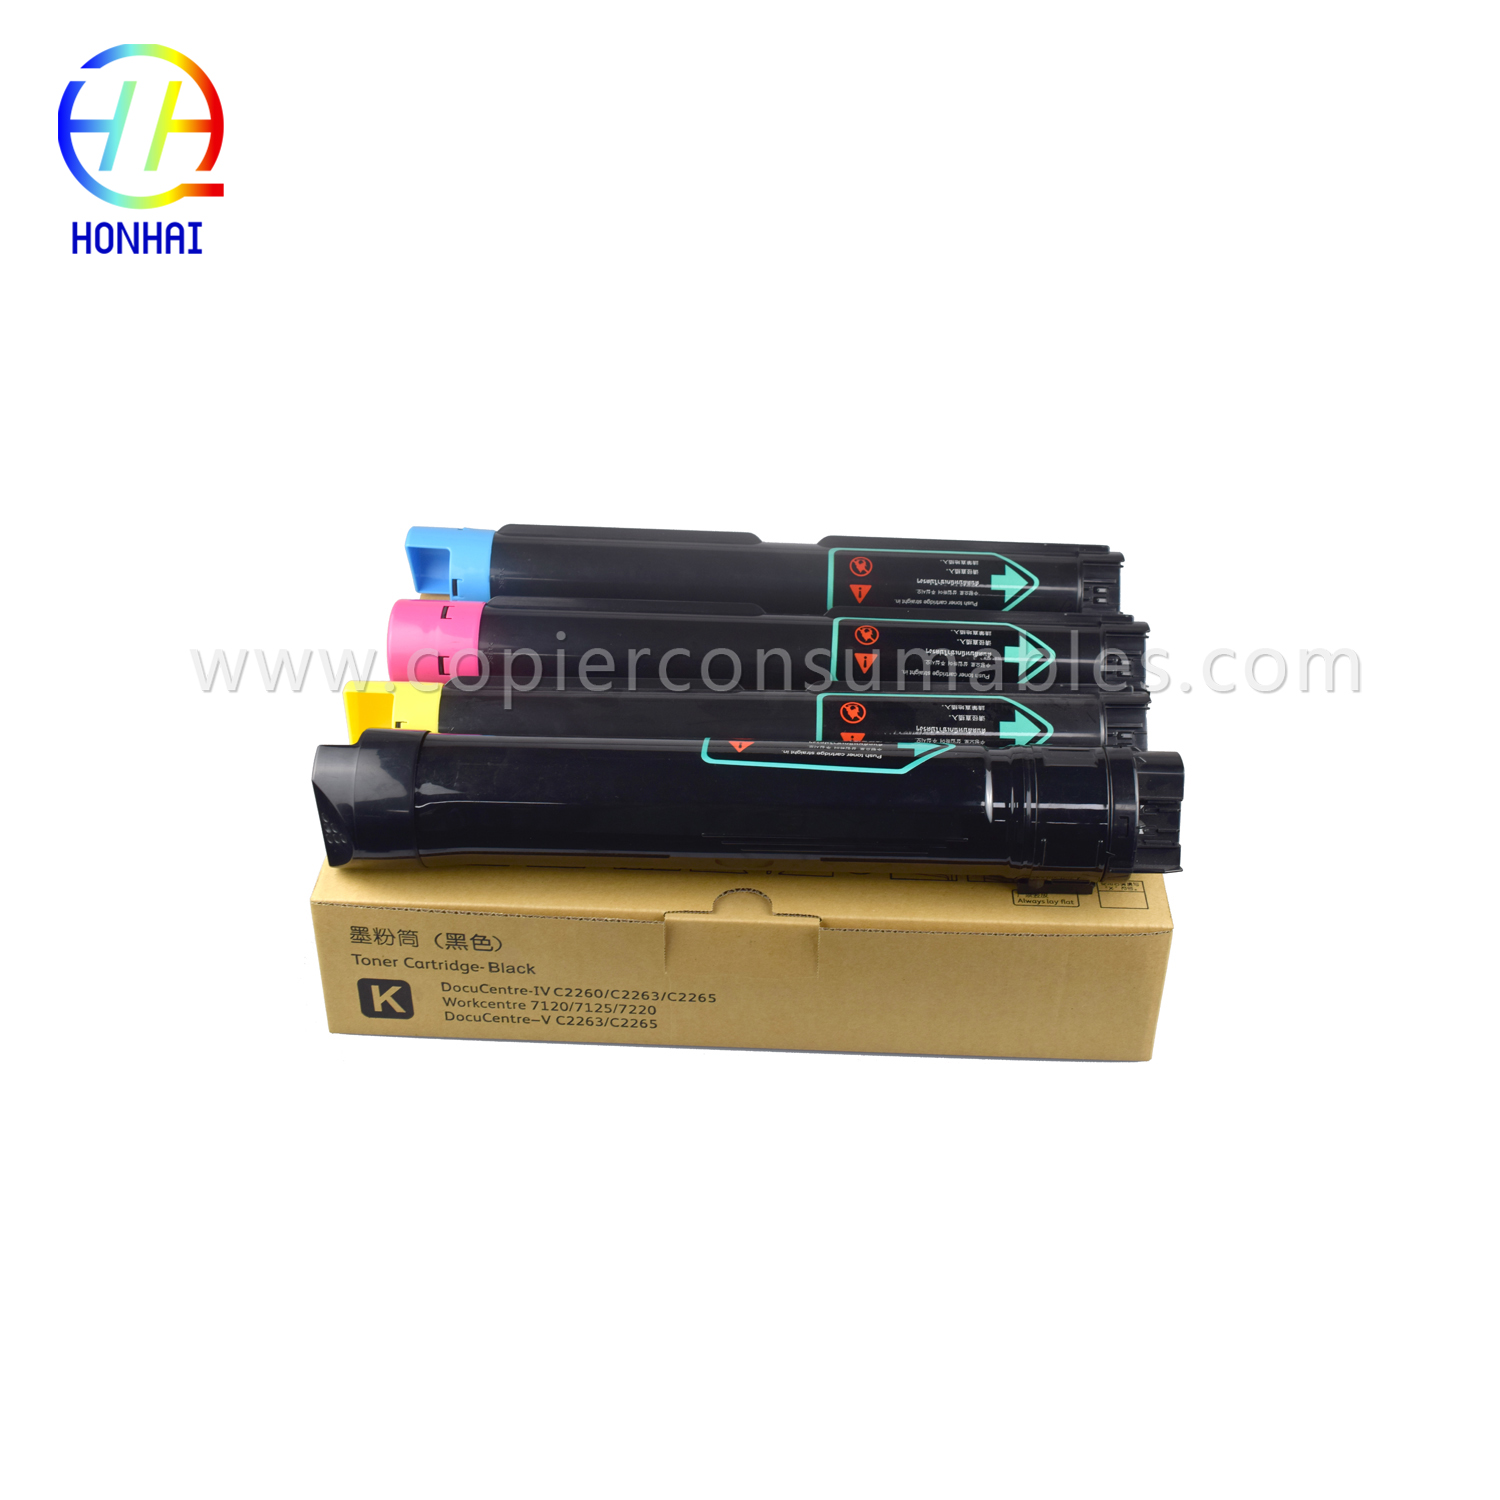 https://www.copierhonhaitech.com/toner-cartridges-for-xerox-ct201370-ct201371-ct201372-ct201373